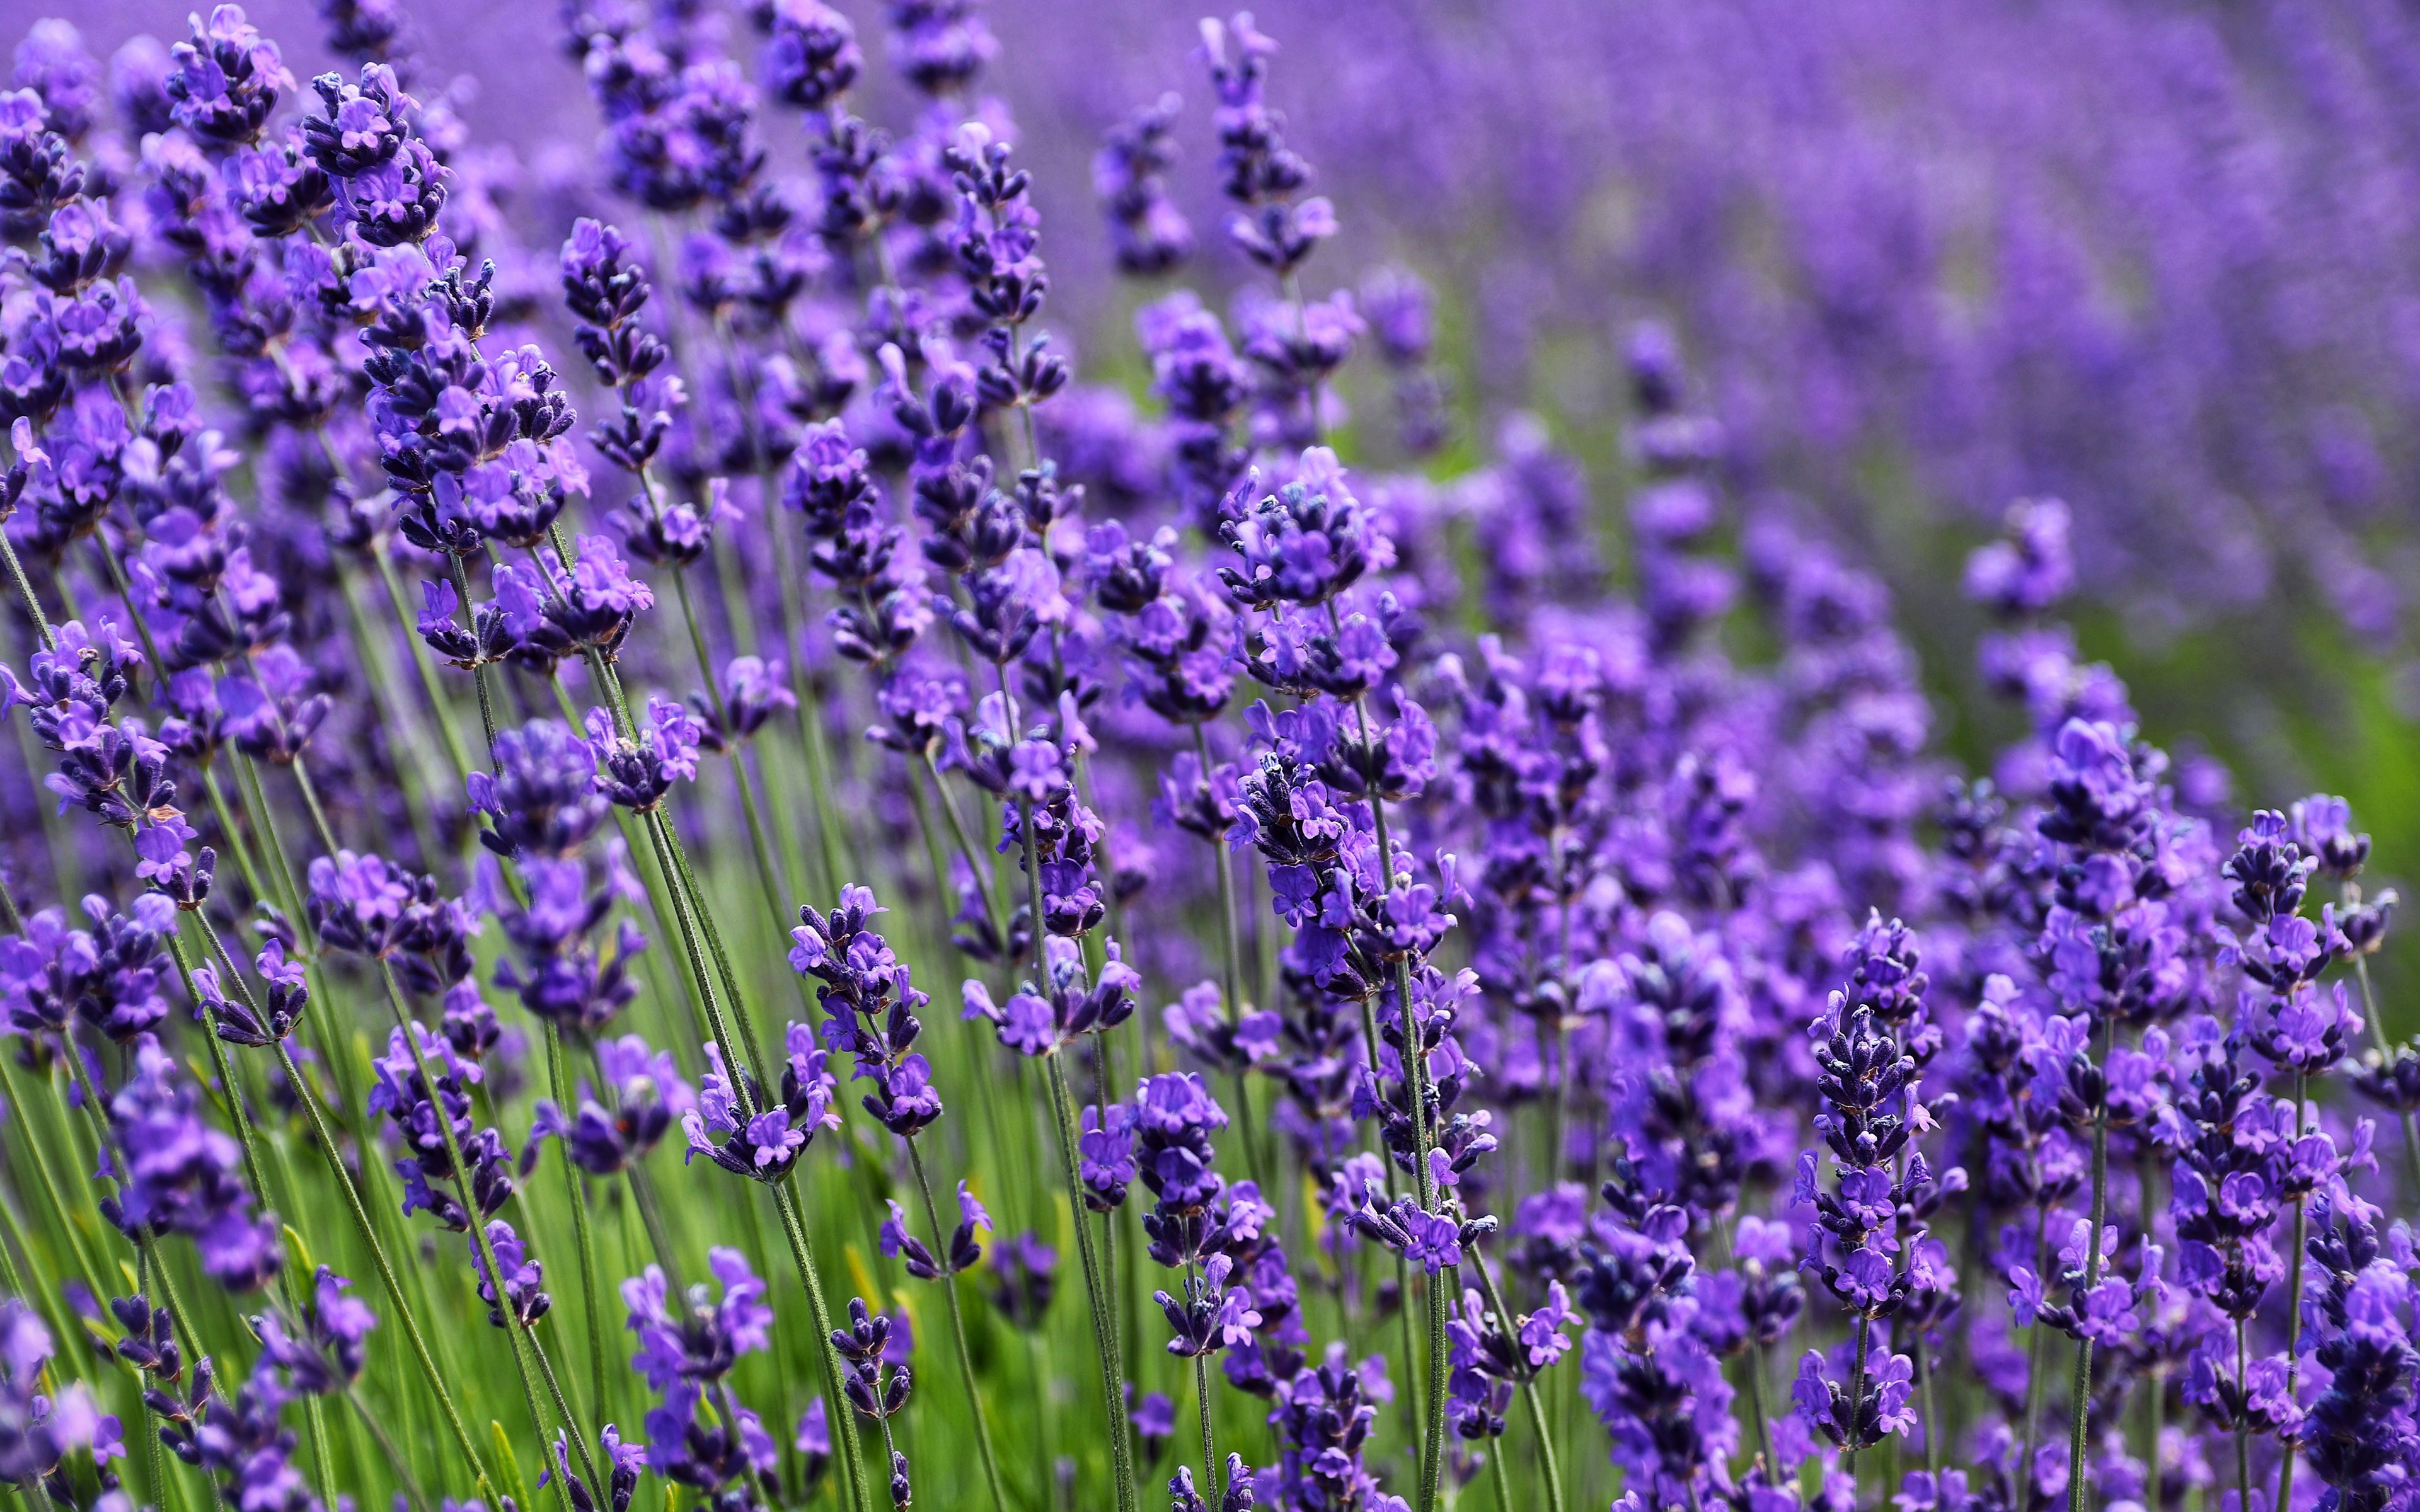 Wallpapers flowers wallpaper purple lavender field wildflowers on the desktop